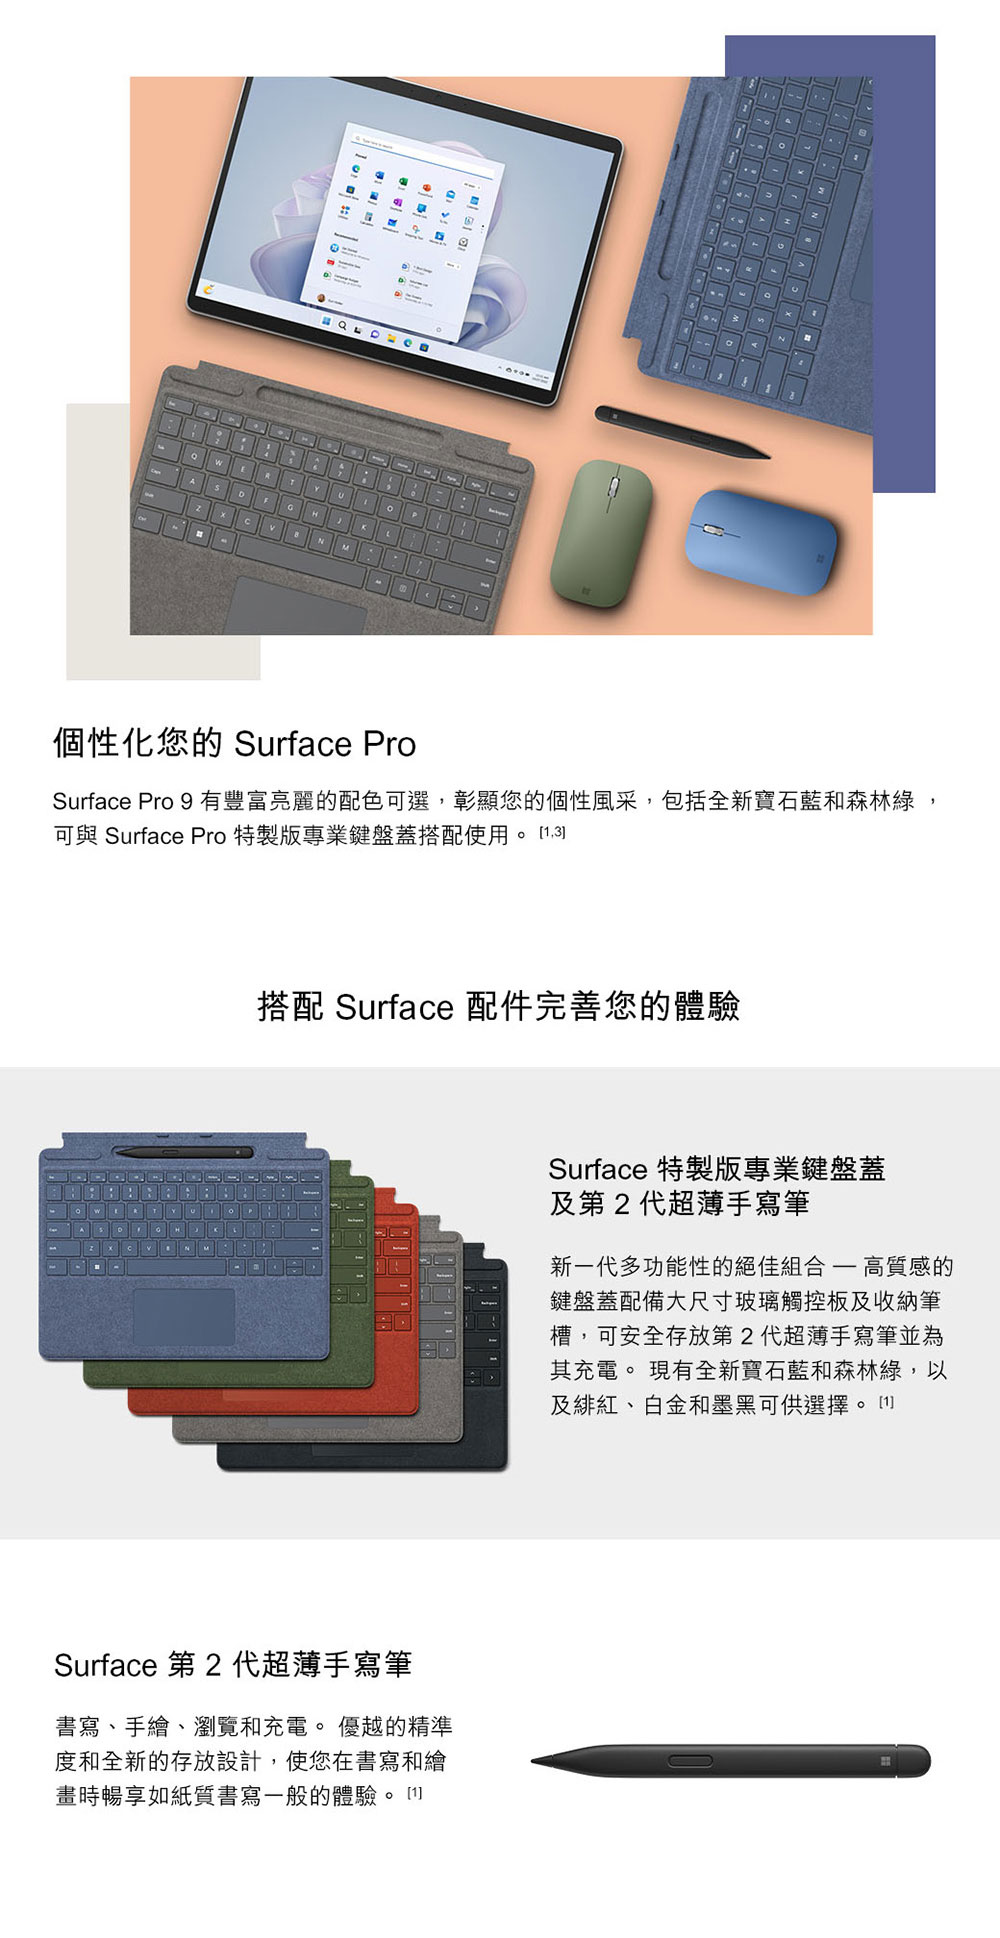 【微軟】Surface Pro 9 (i5 8G 128G) 平板電腦